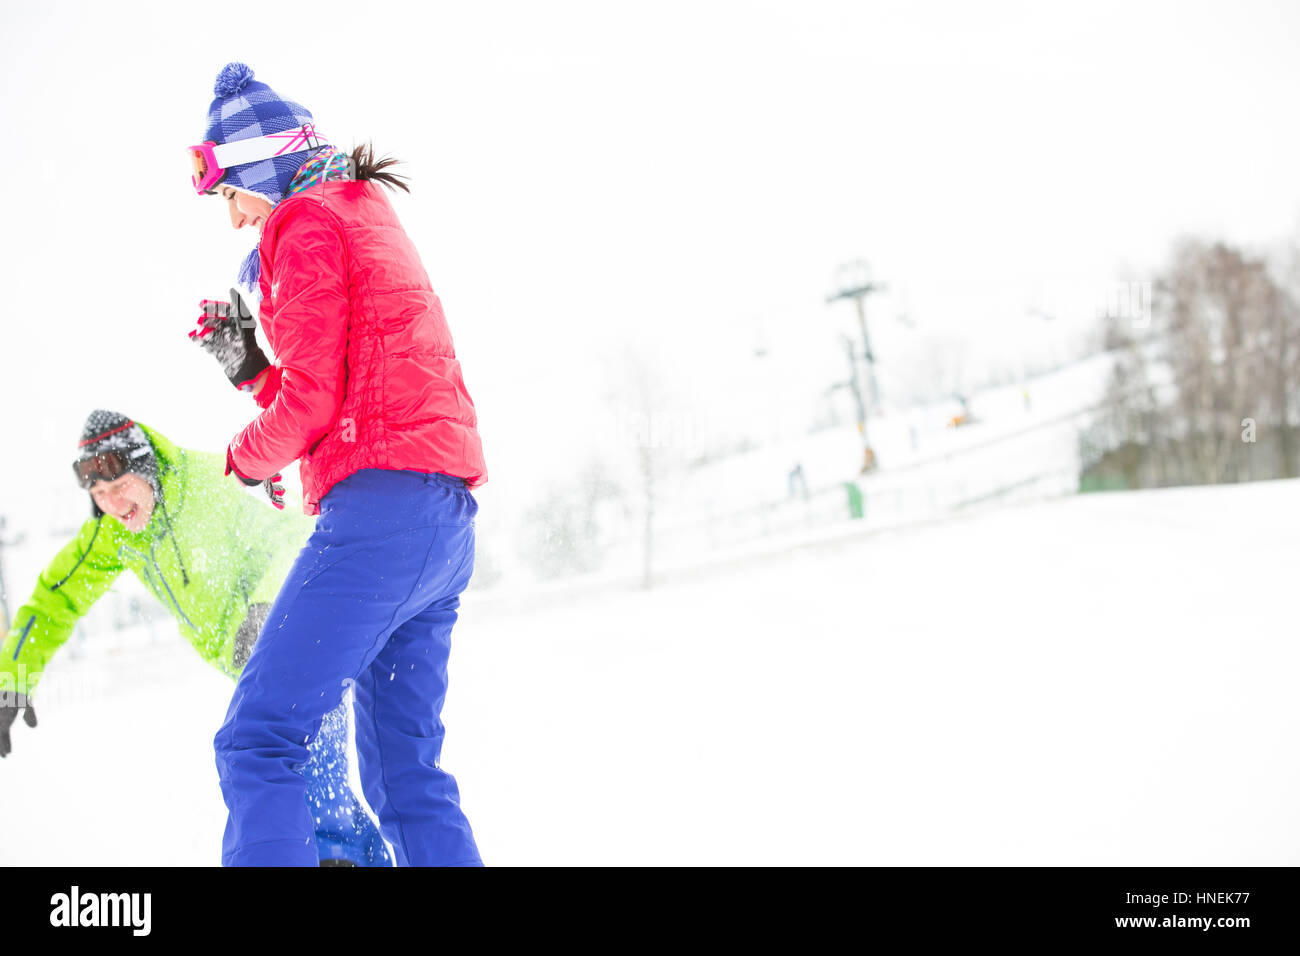 Junge Freunde spielen im Schnee Stockfoto